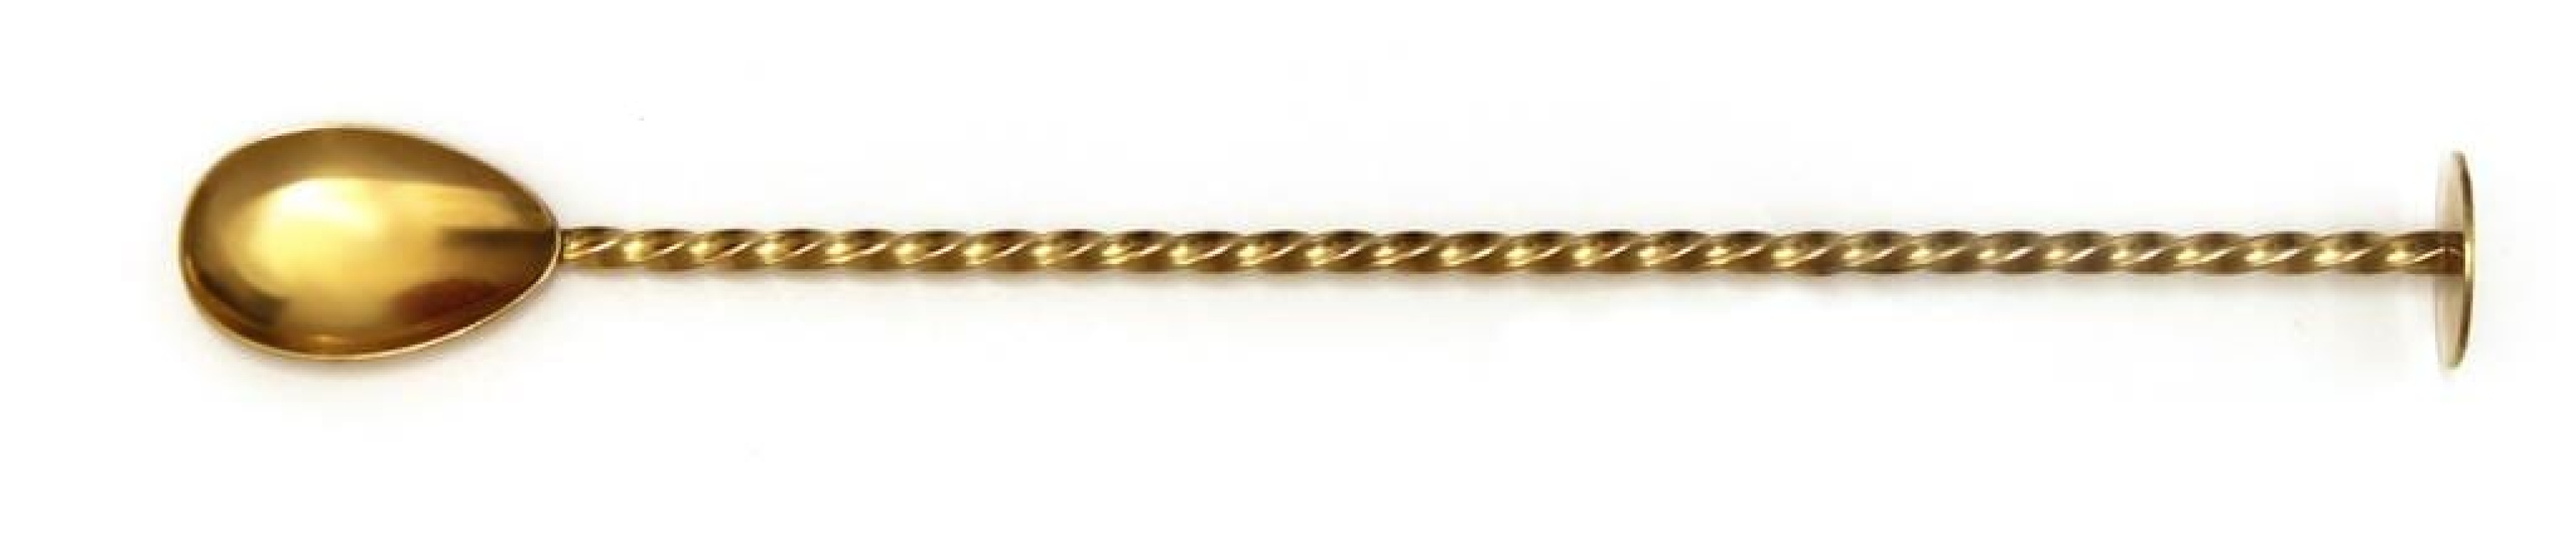 Barsked, Guld, 27 cm - Bonzer